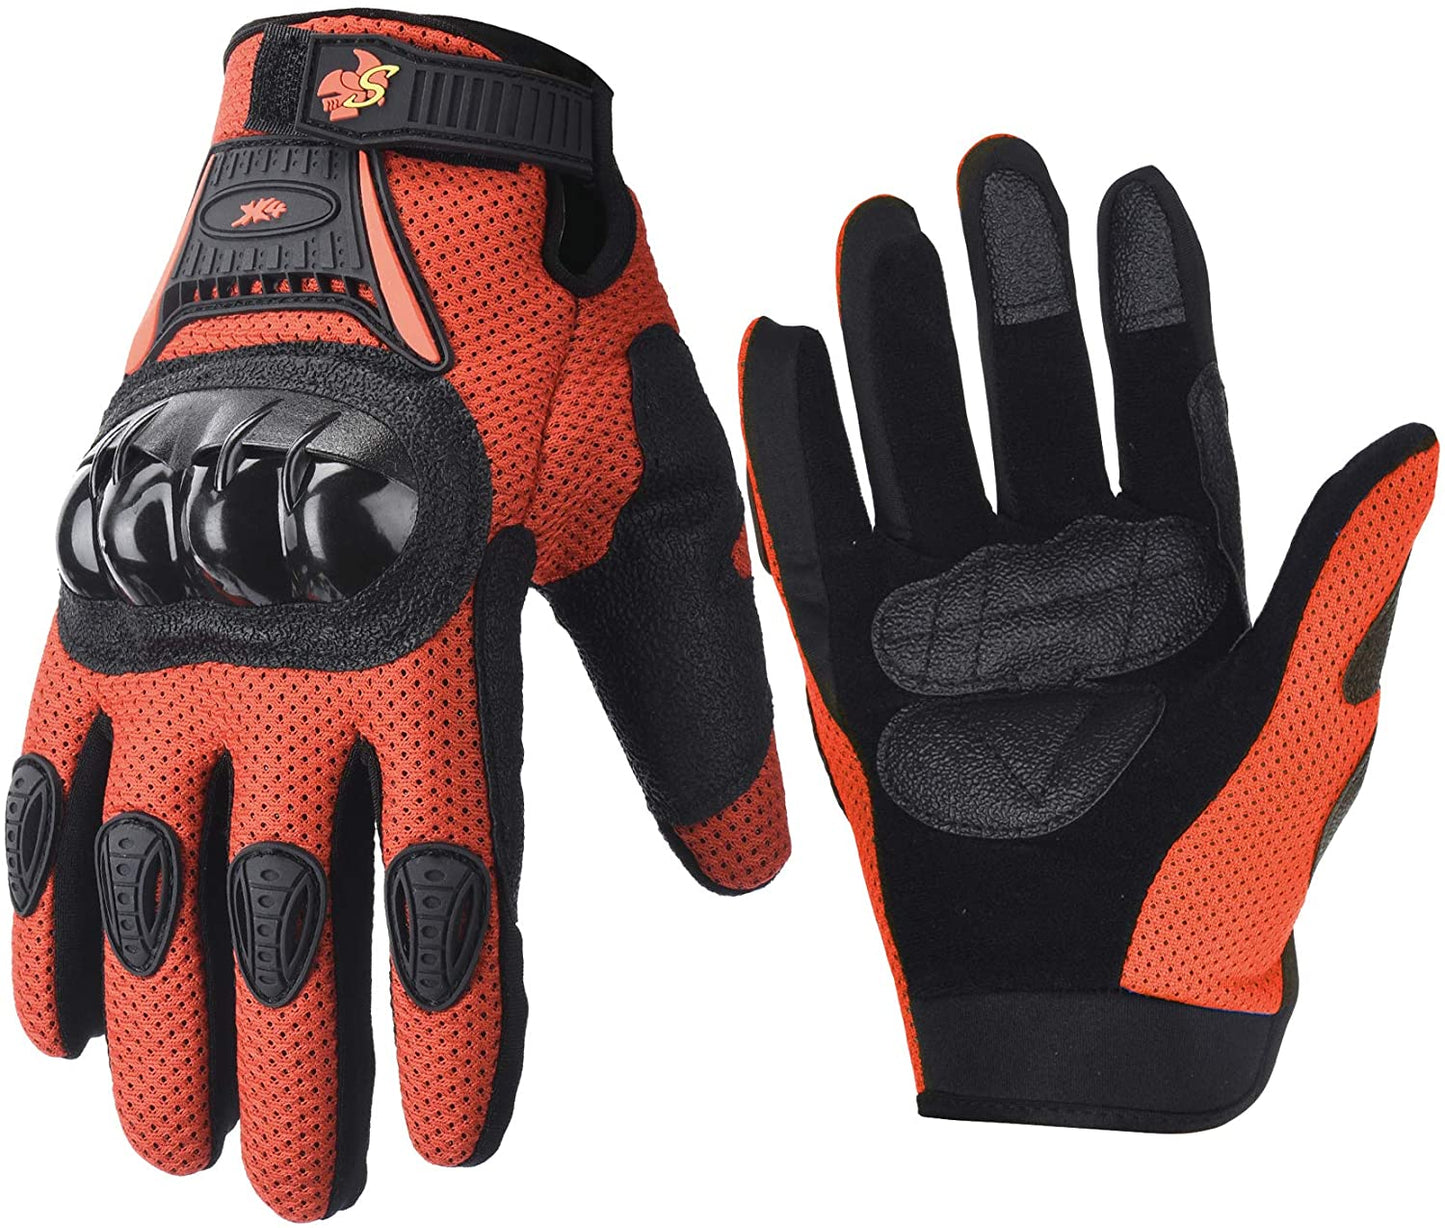 Motorcycle Gloves | Street Pocket Bike Full Finger Gloves | Motorcycle Knuckle Protected Gloves